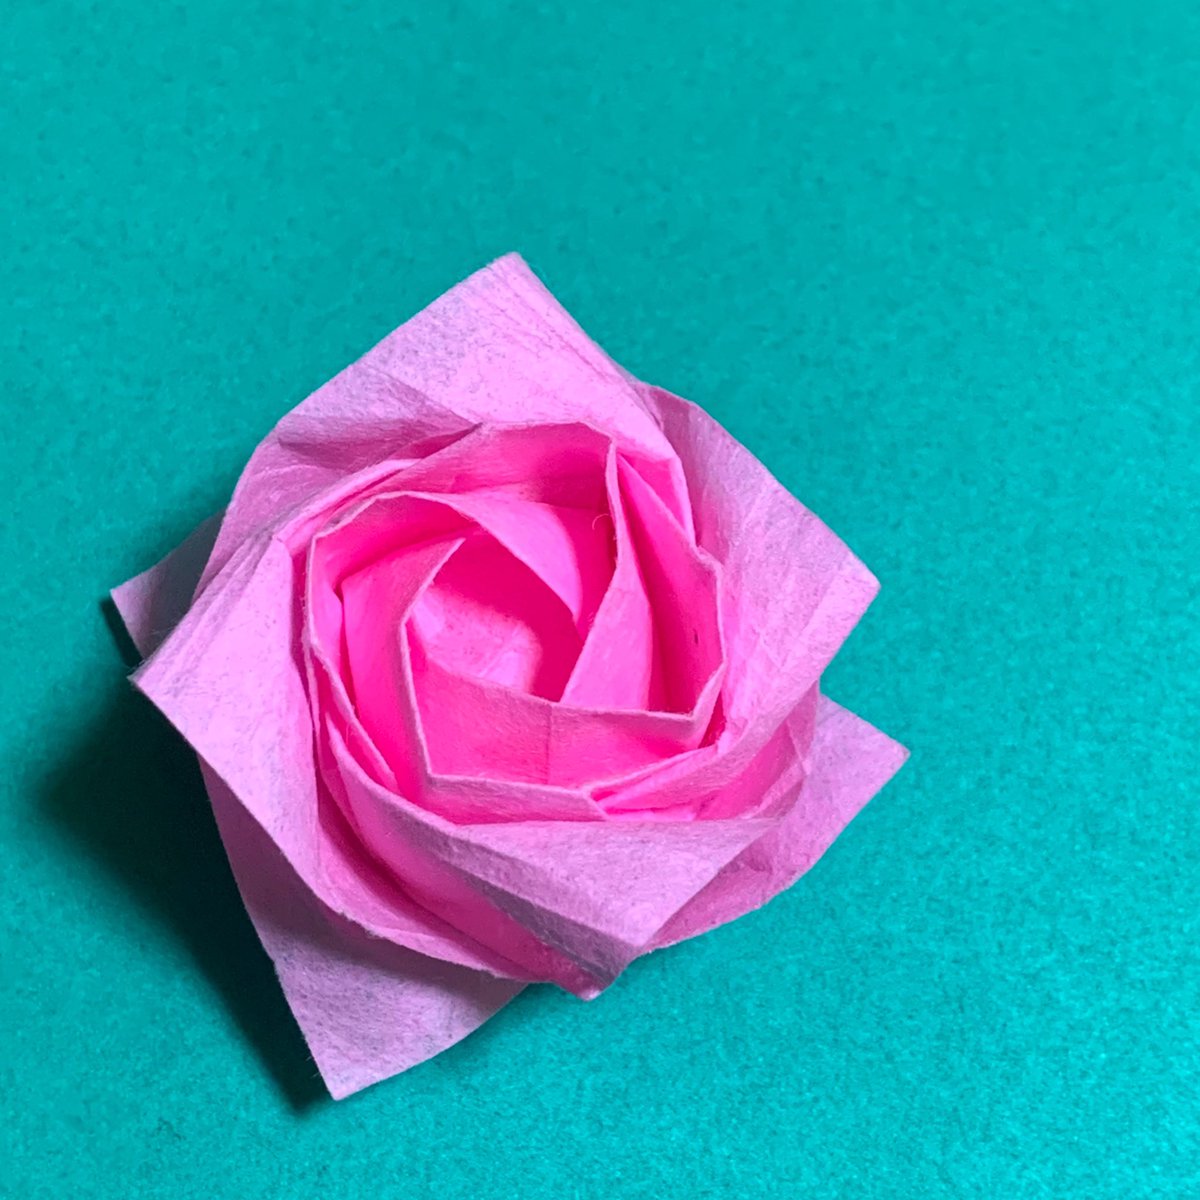 柚子みかん 折り紙 V Twitter 川崎ローズの 薔薇 を折ったはずなのですが 途中からワケわからんっ ってなったので えーい とりあえずそれっぽくまとめて終わりましたw 折りバラ 川崎ローズ